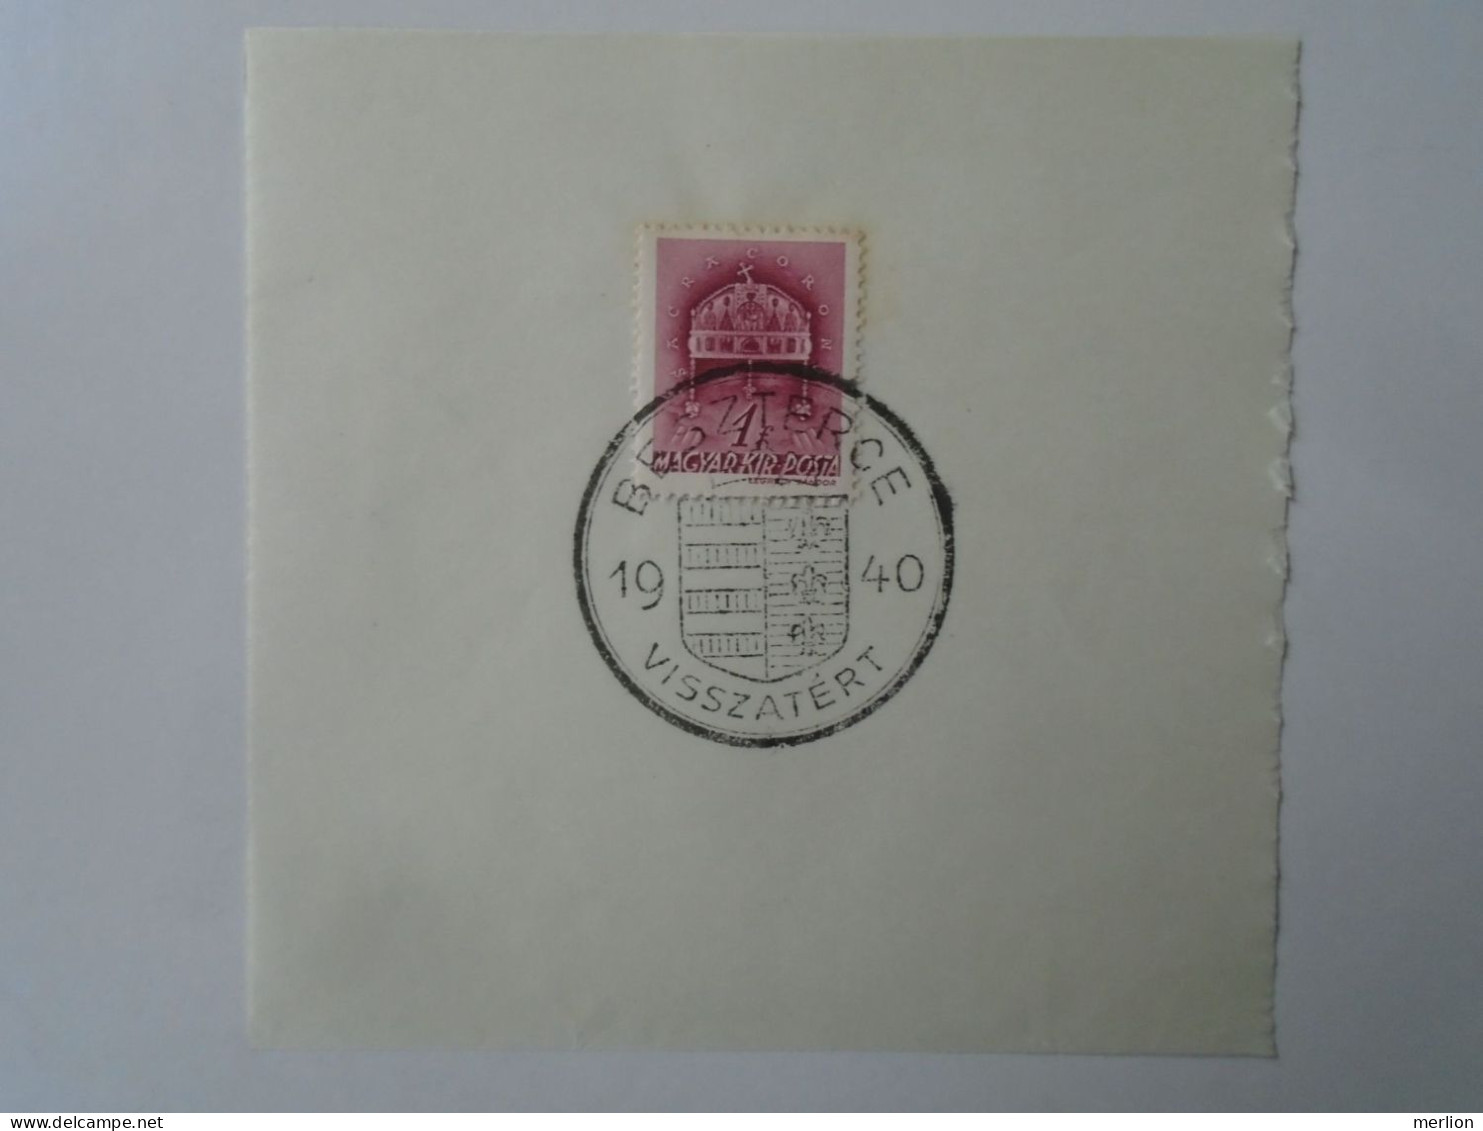 ZA451.64  Hungary - Beszterce  - Visszatért -Commemorative Postmark 1940 - Marcophilie